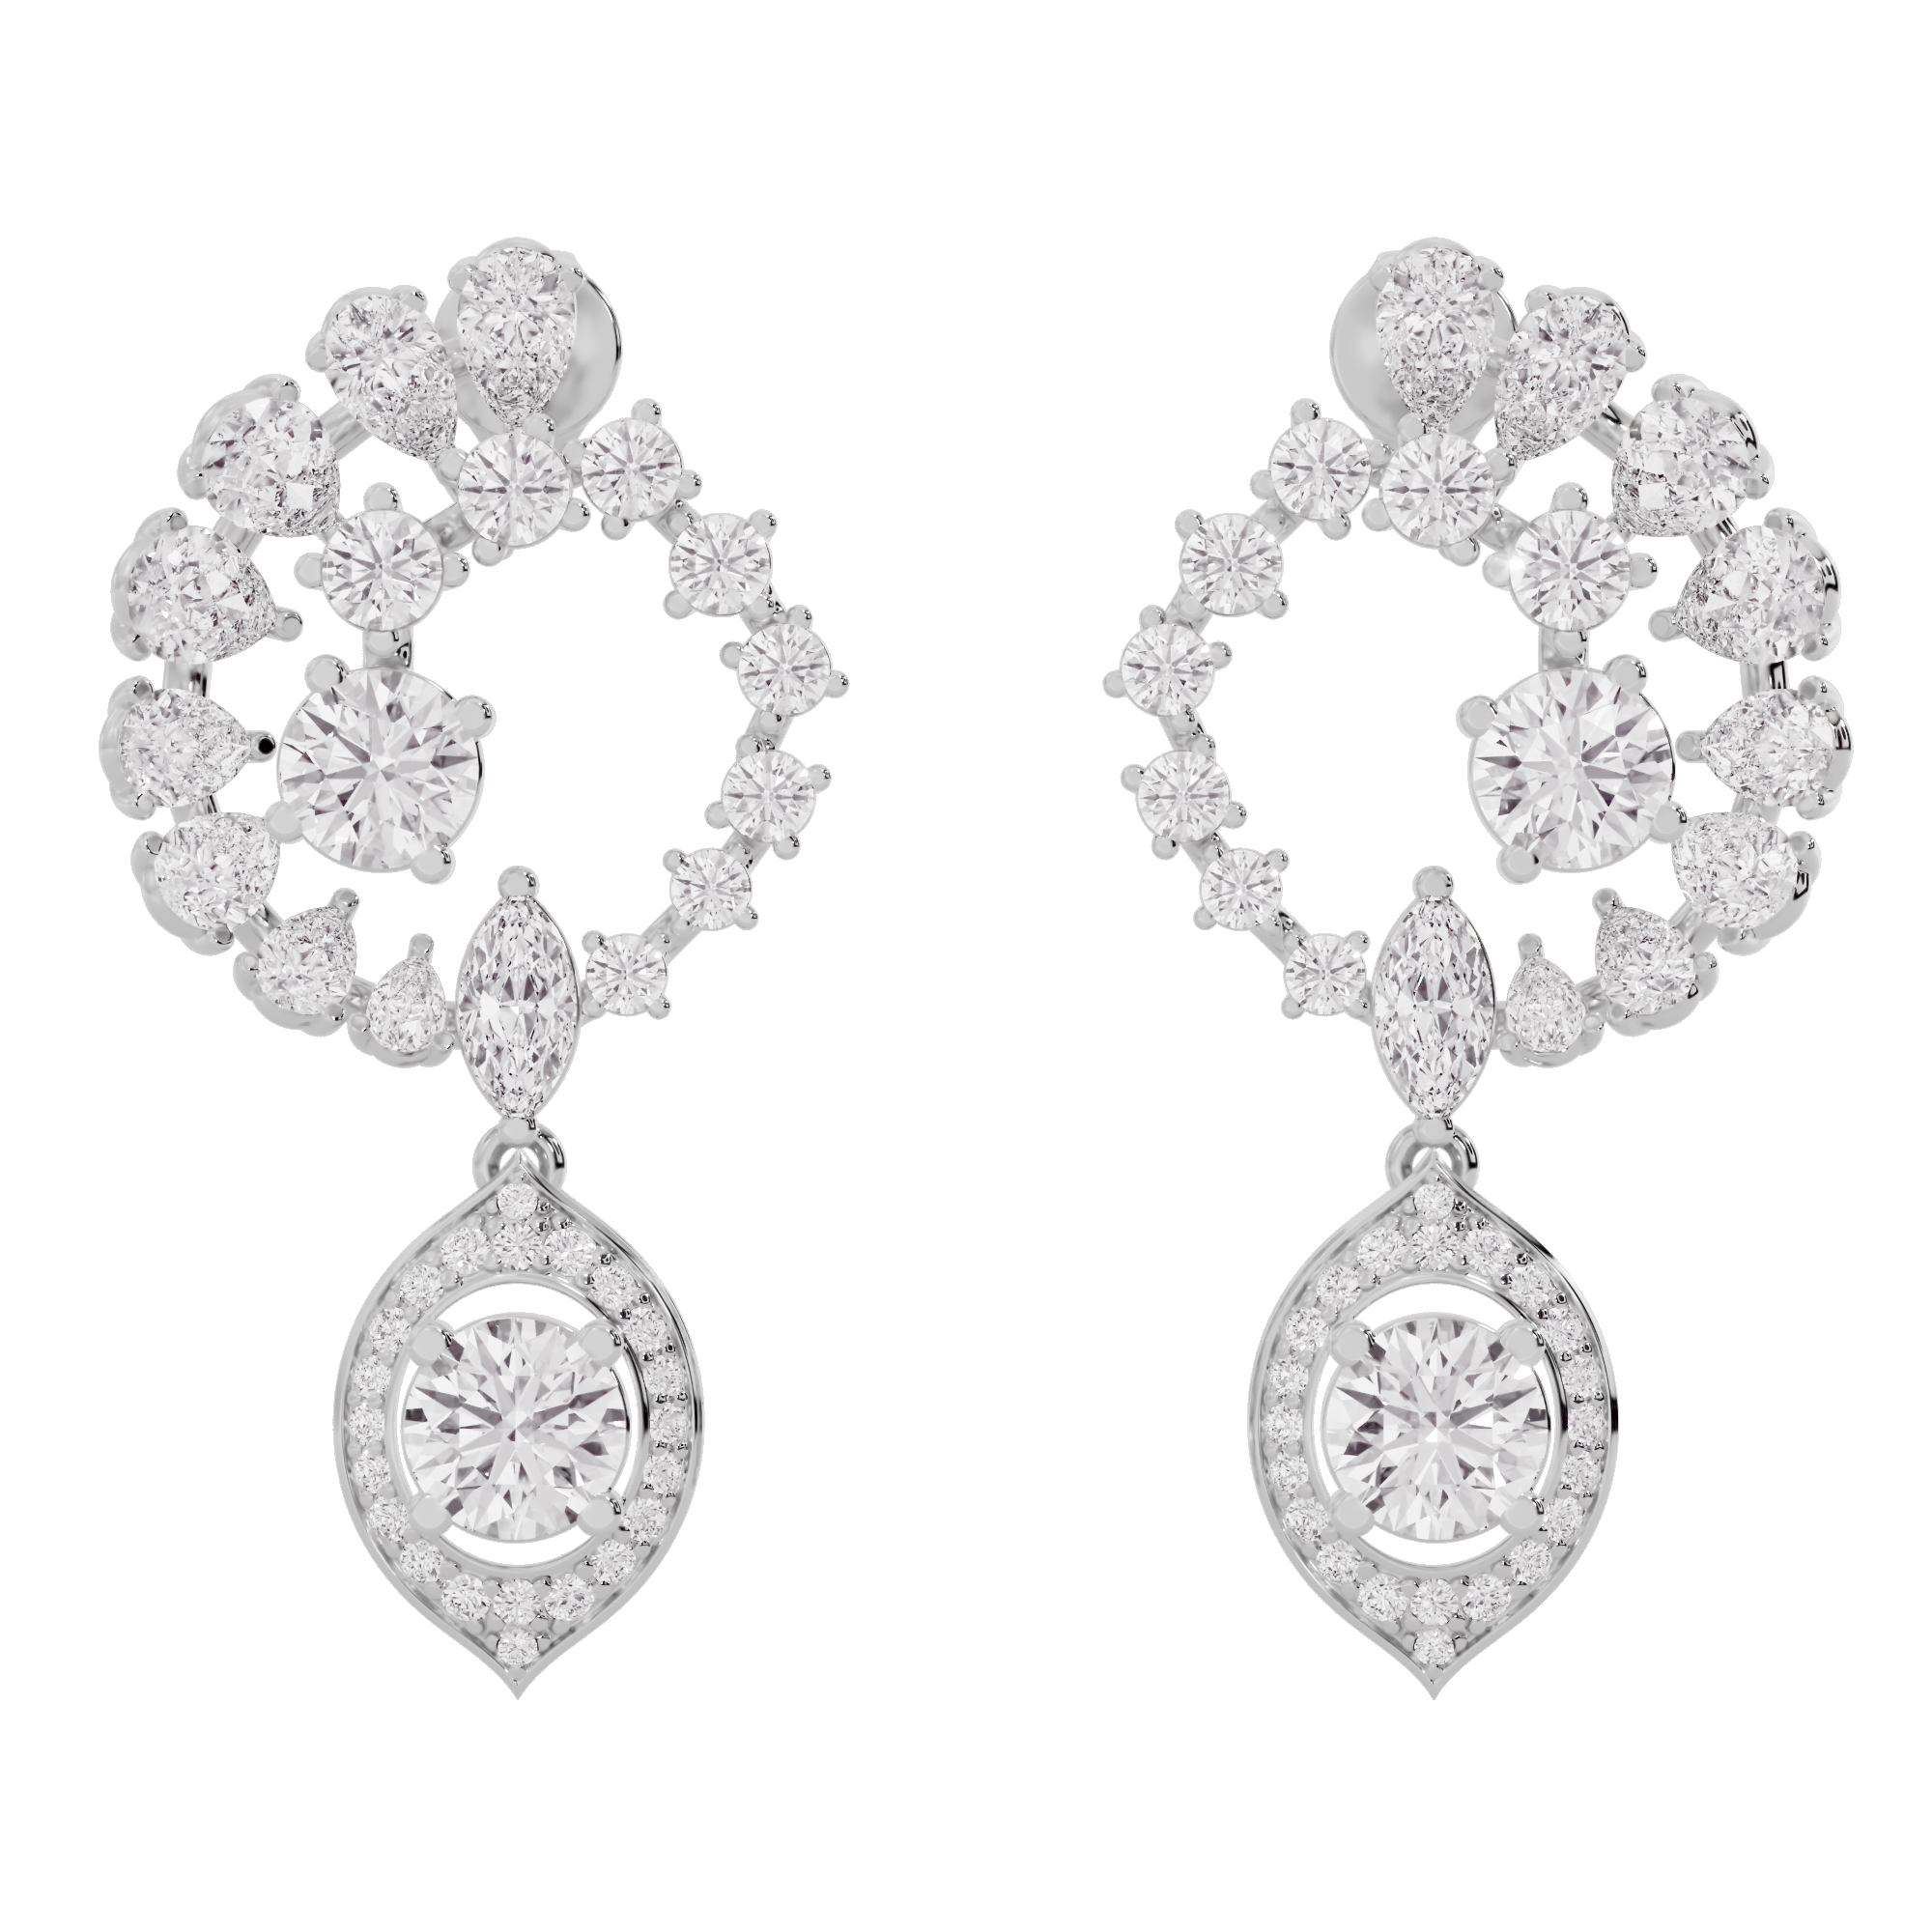 Regal Reverie Diamond Blossom Earrings